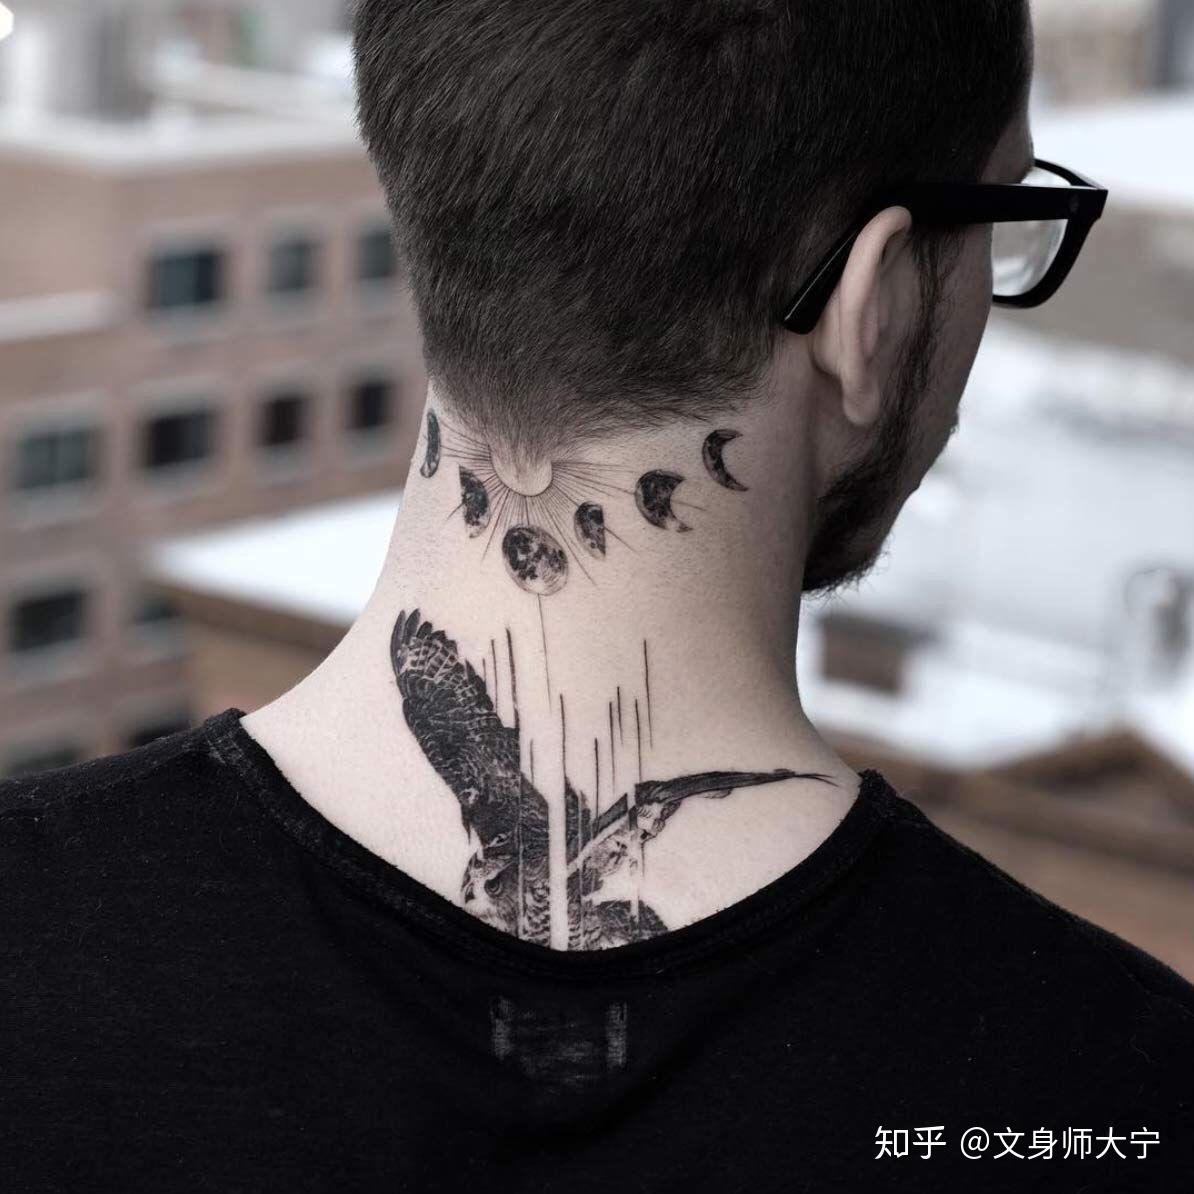 五角星纹身图案素材大全 - 深圳纹彩刺青